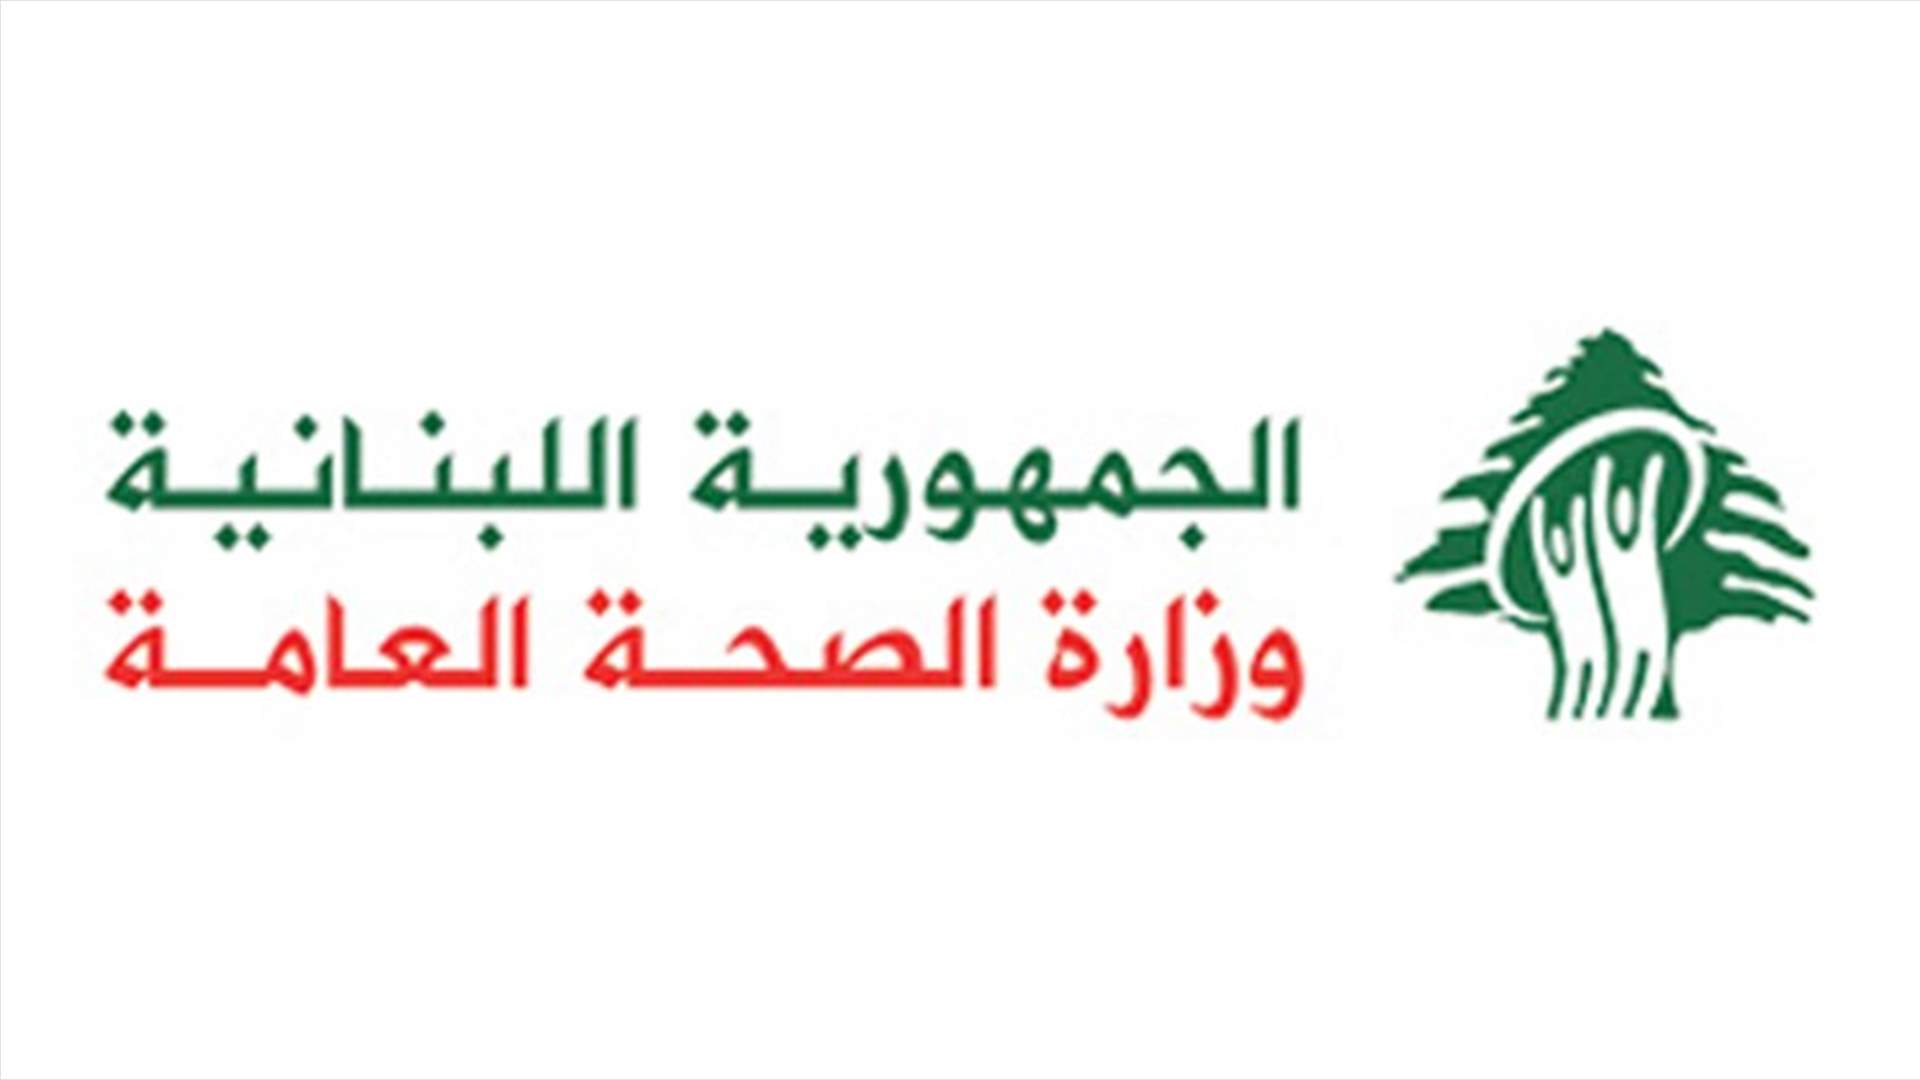 لبنان يسجل اصابات جديدة بكورونا... اليكم تقرير وزارة الصحة